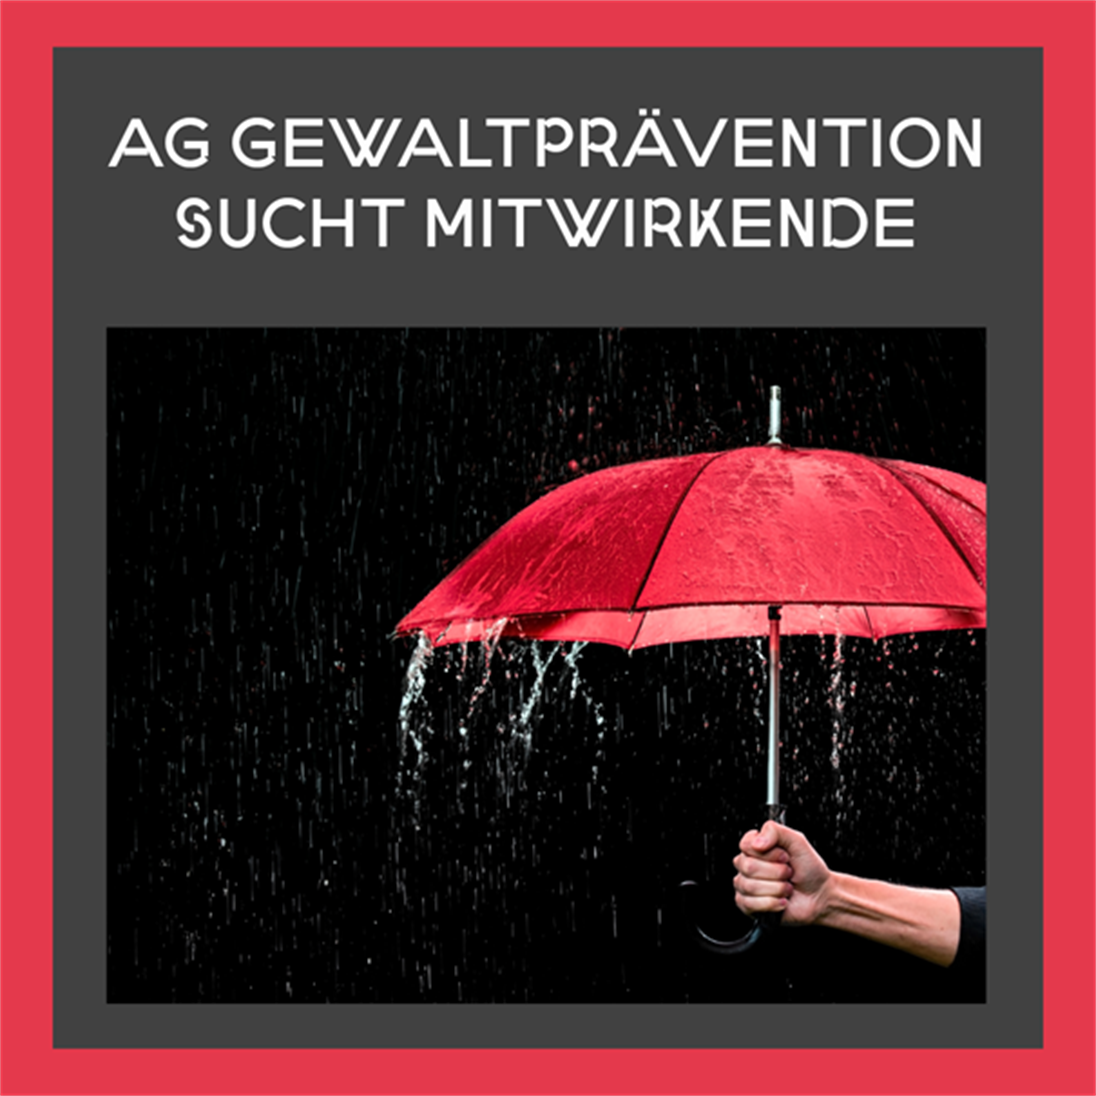 Roter Regenschirm und darunter die Schrift: AG Gewaltprävention sucht Mitwirkende